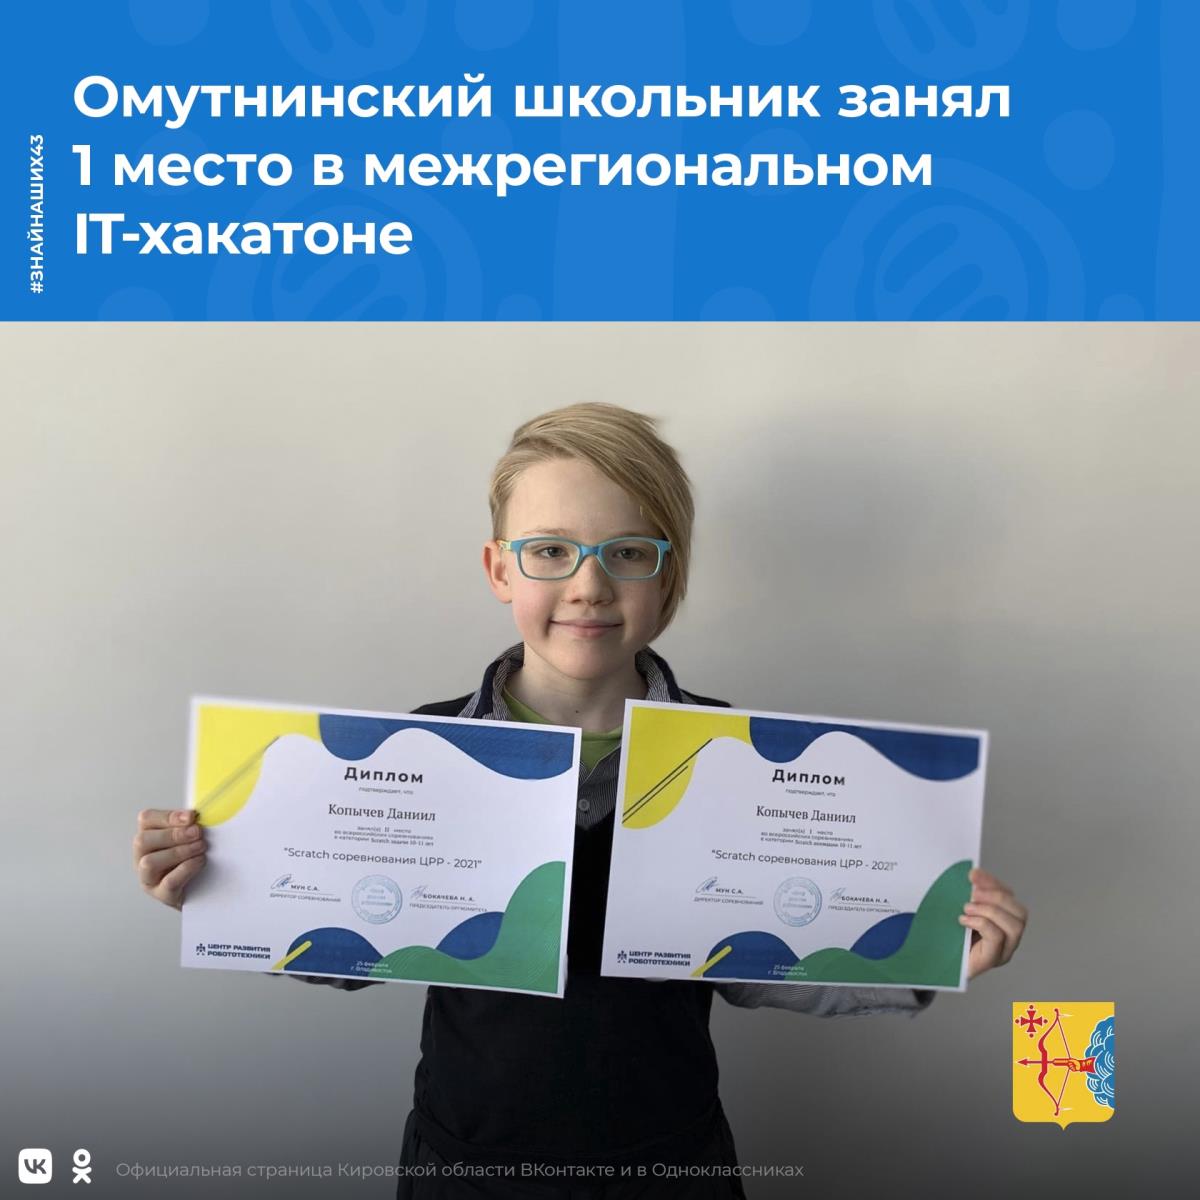 Омутнинский школьник занял первое место в межрегиональном IT-хакатоне